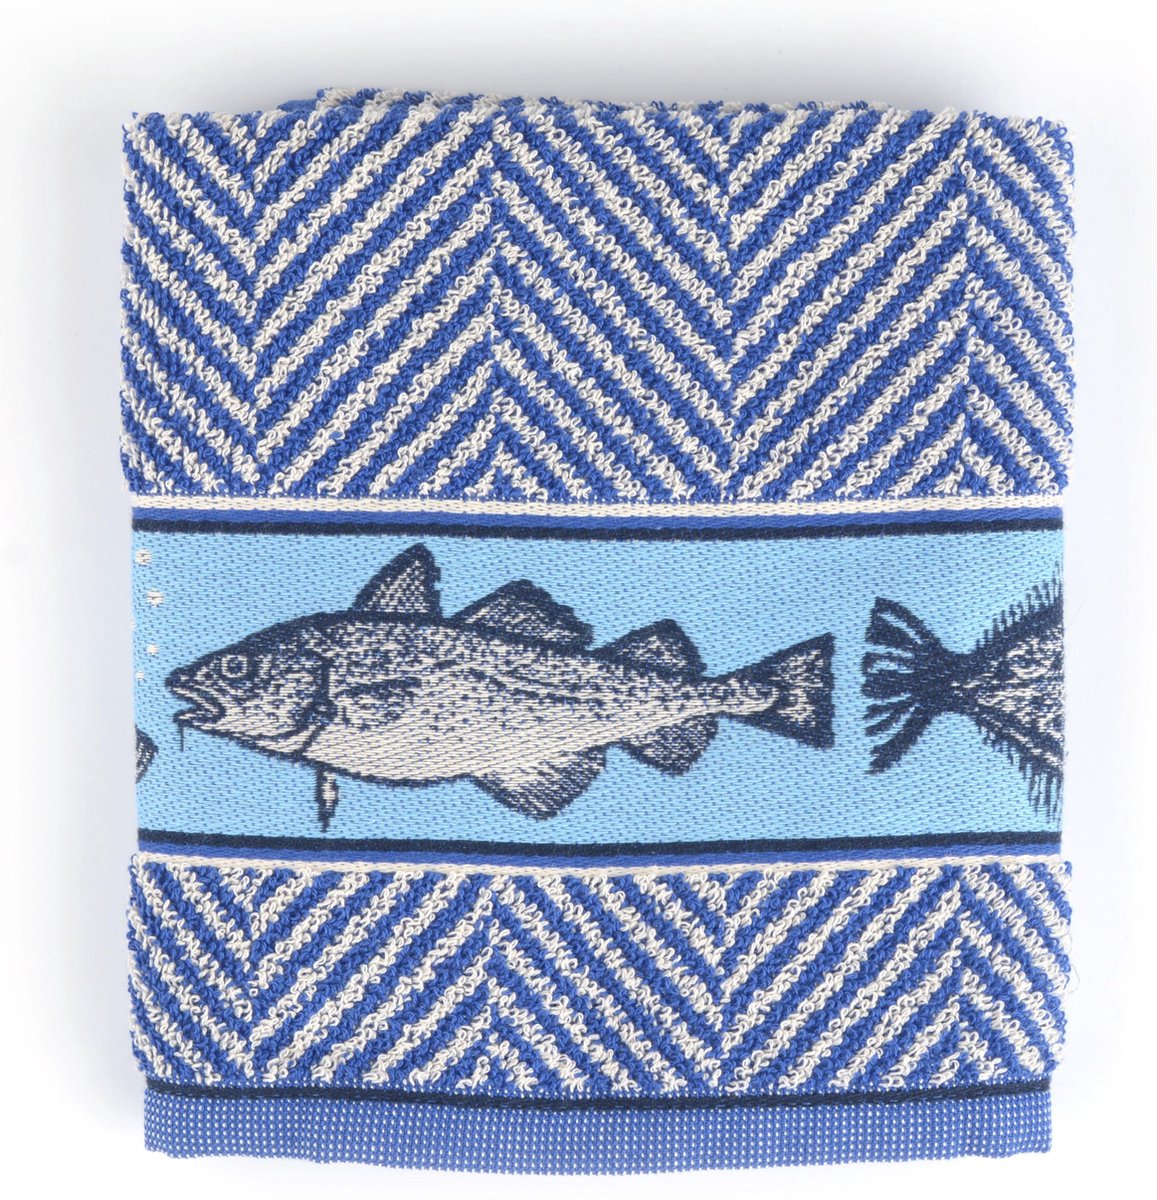 Keukendoek Bunzlau Castle Fish 53x60cm, blauw - 6 pack